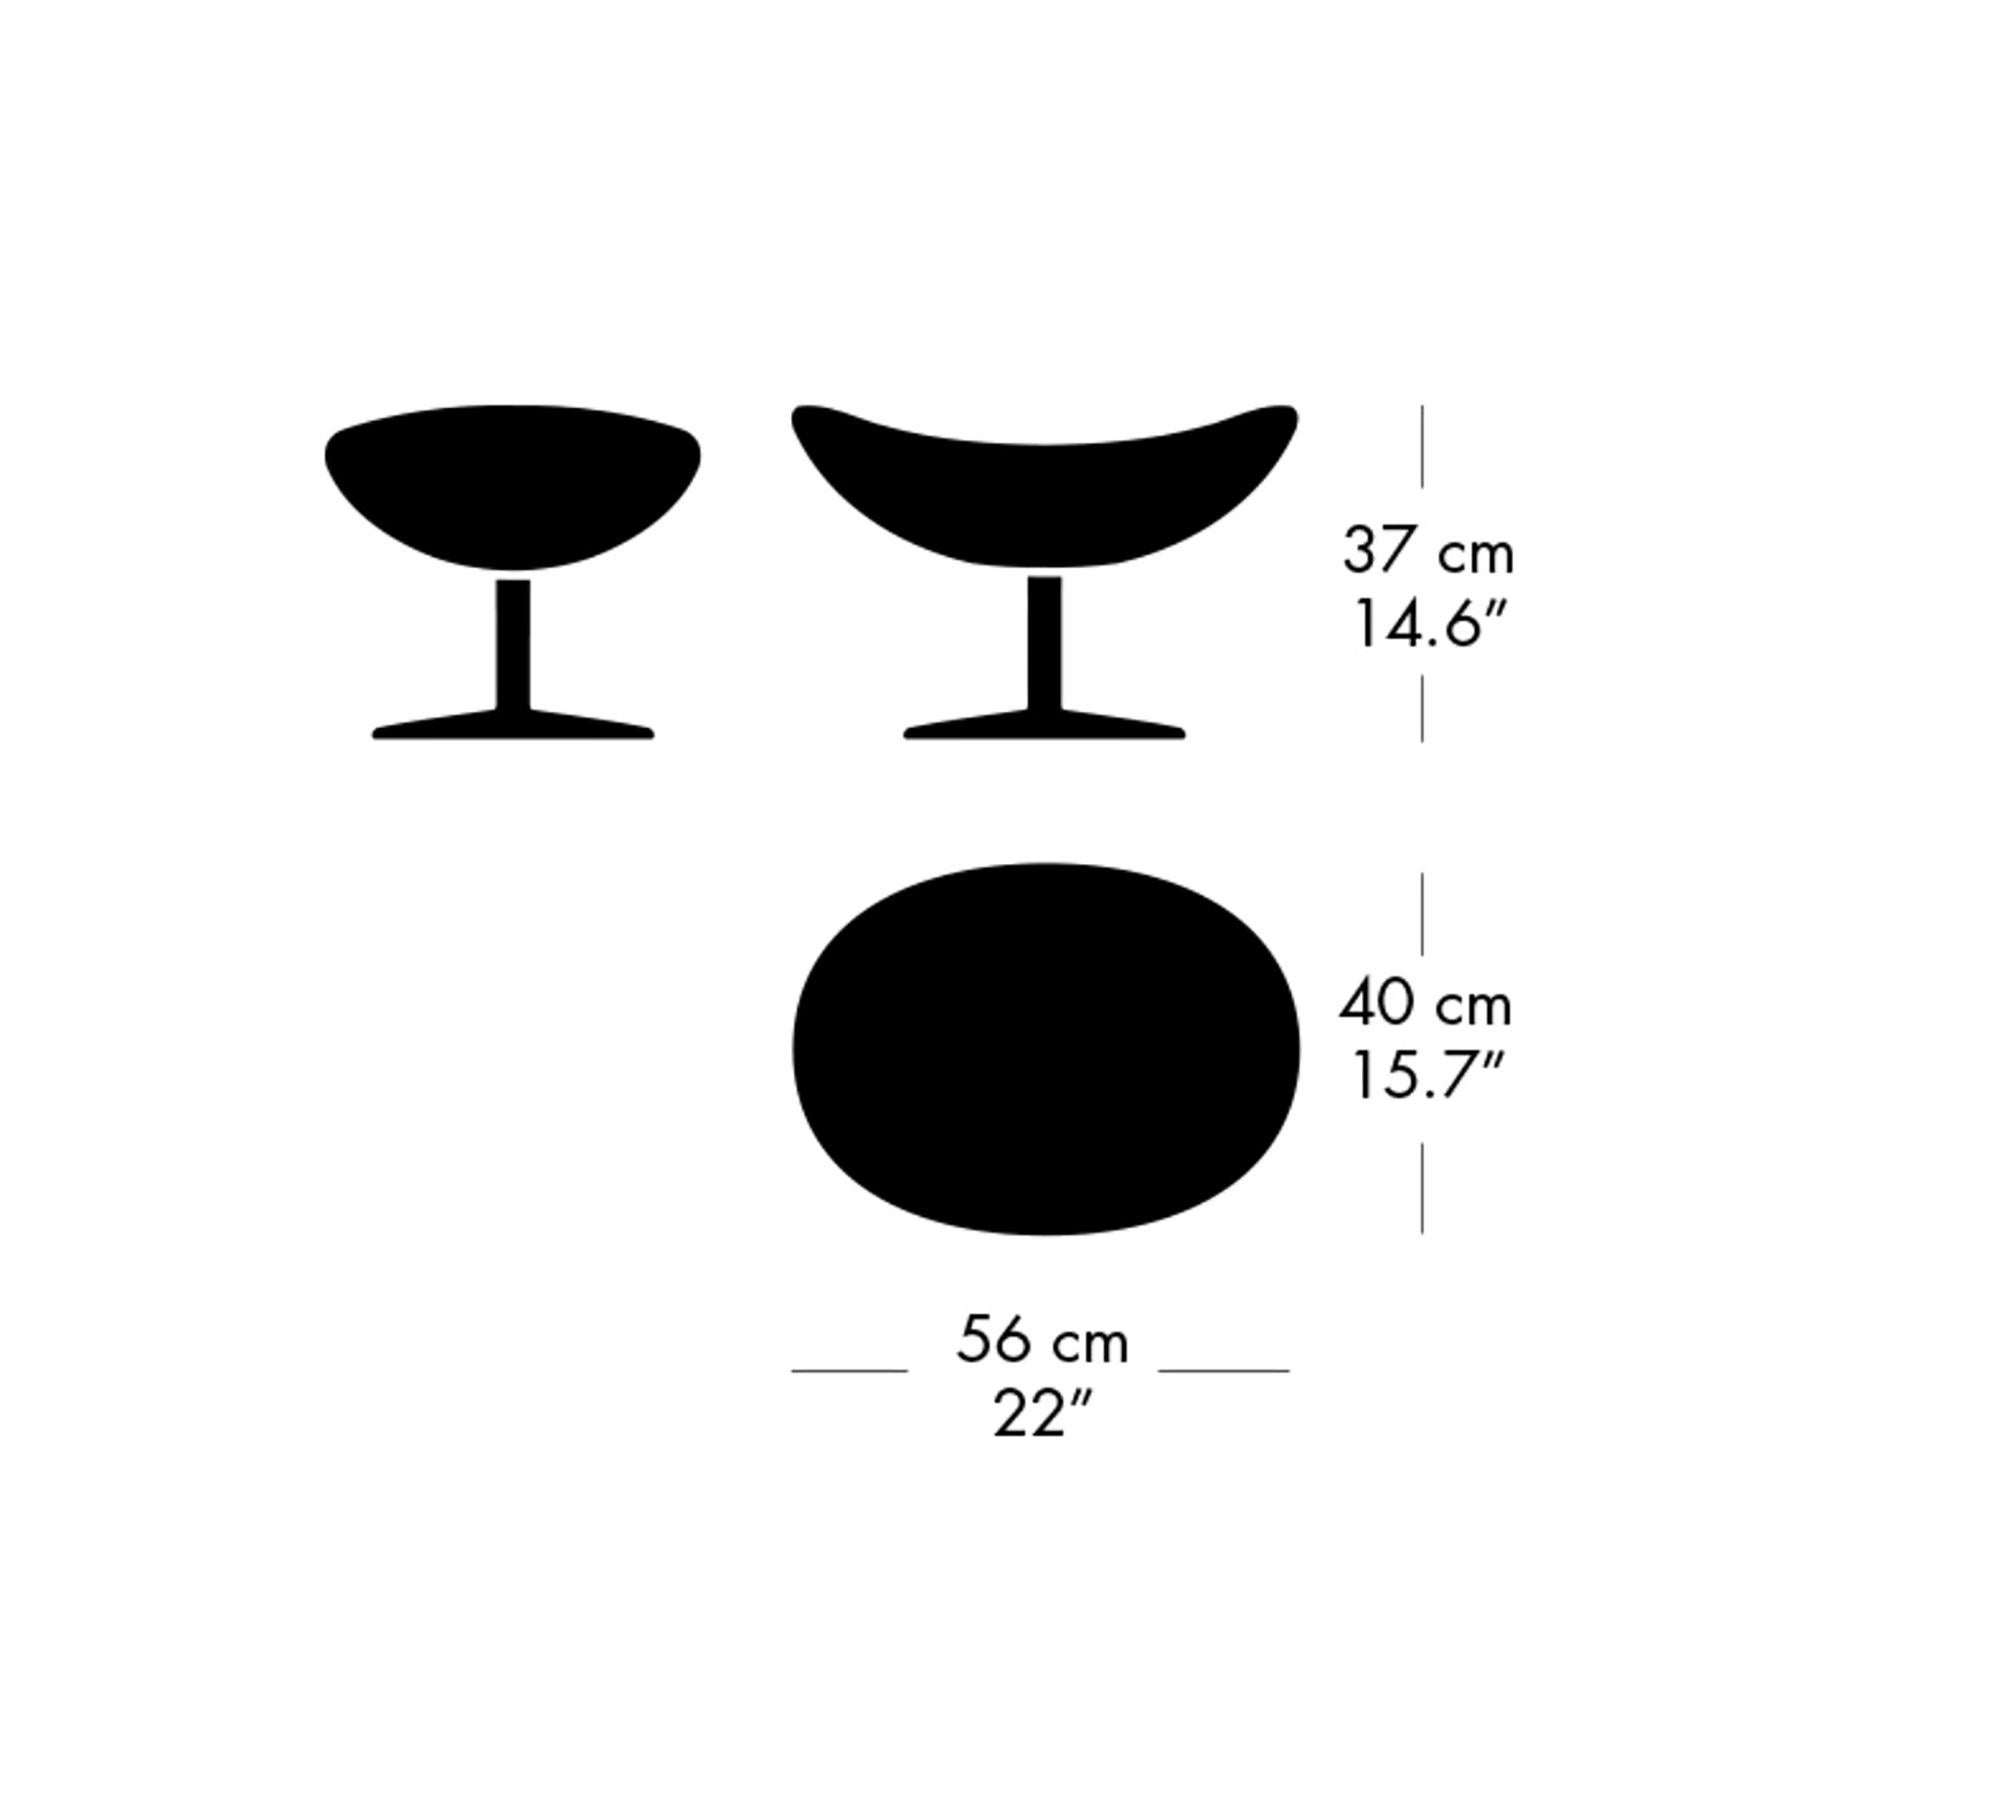 Arne Jacobsen 'Egg' Footstool for Fritz Hansen in Leather Upholstery (Cat. 3) For Sale 7